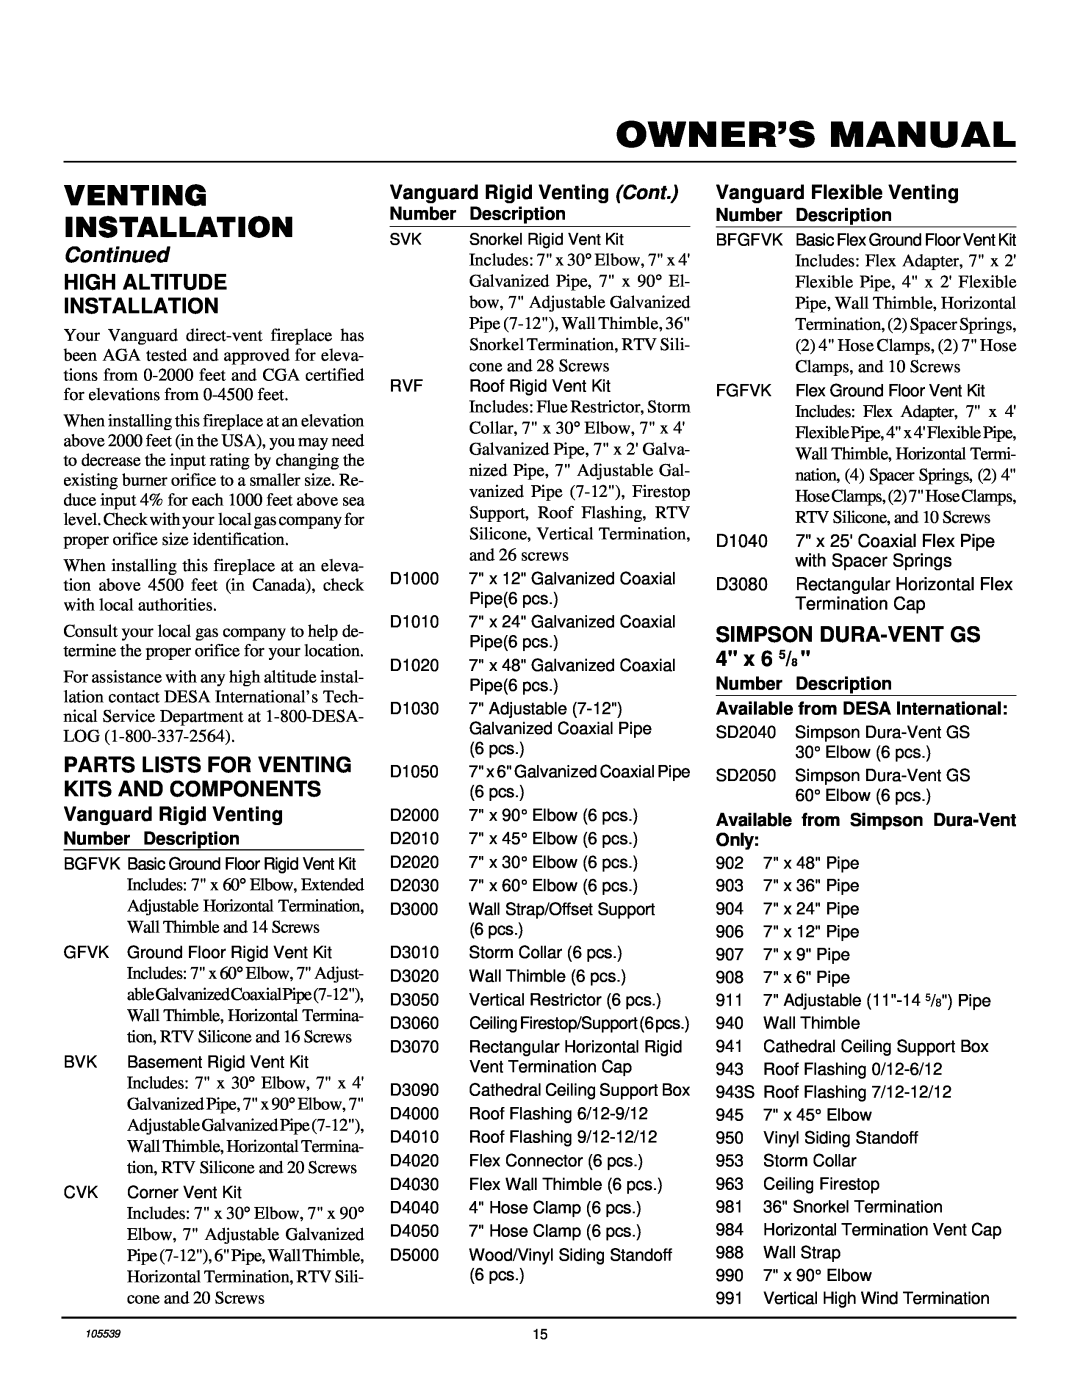 Desa BDV41N/P, BDV37N/P, B) Venting Installation, Continued, Vanguard Rigid Venting Cont, Vanguard Flexible Venting 